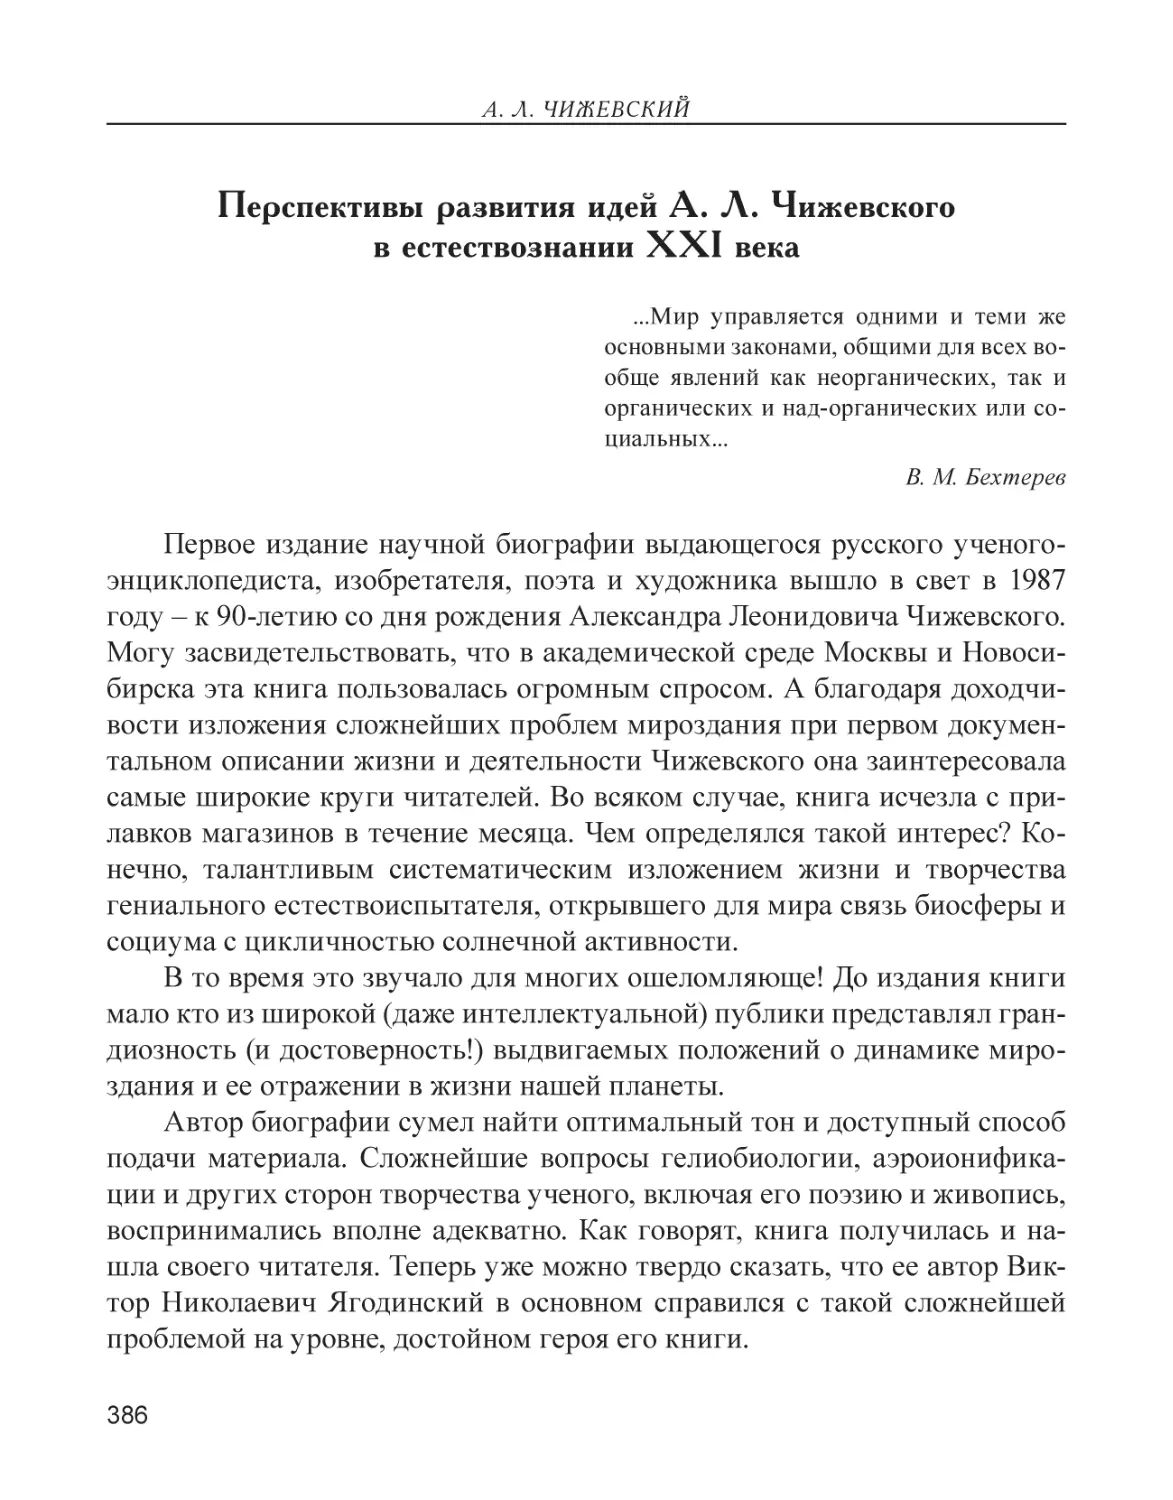 Перспективы развития идей А. Л. Чижевского в естествознании XXI века